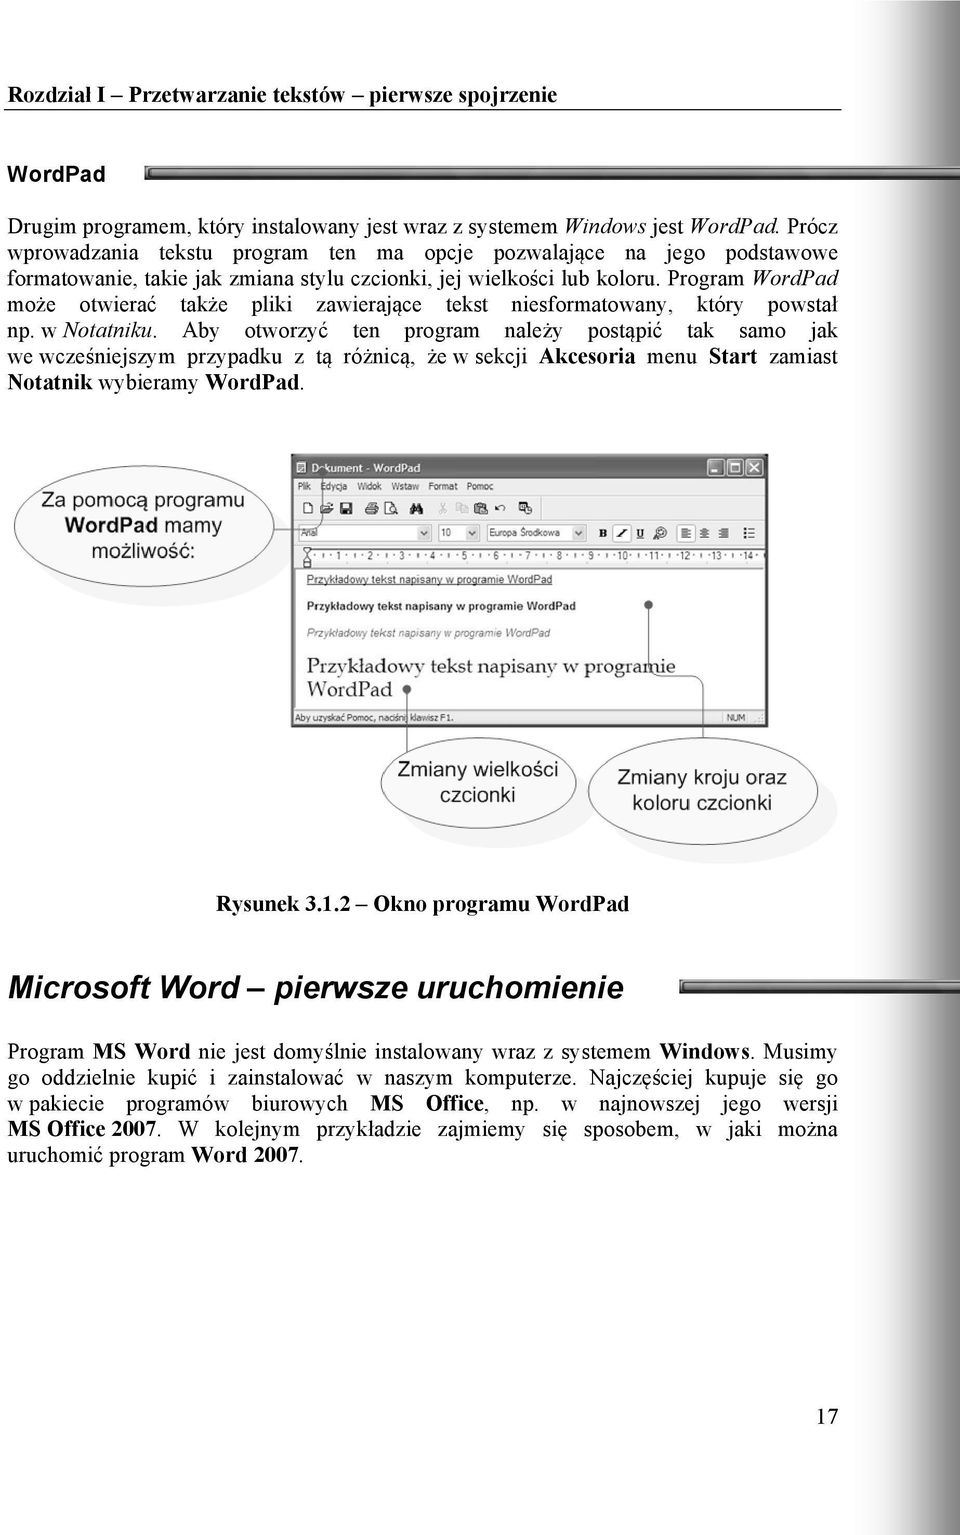 Program WordPad może otwierać także pliki zawierające tekst niesformatowany, który powstał np. w Notatniku.